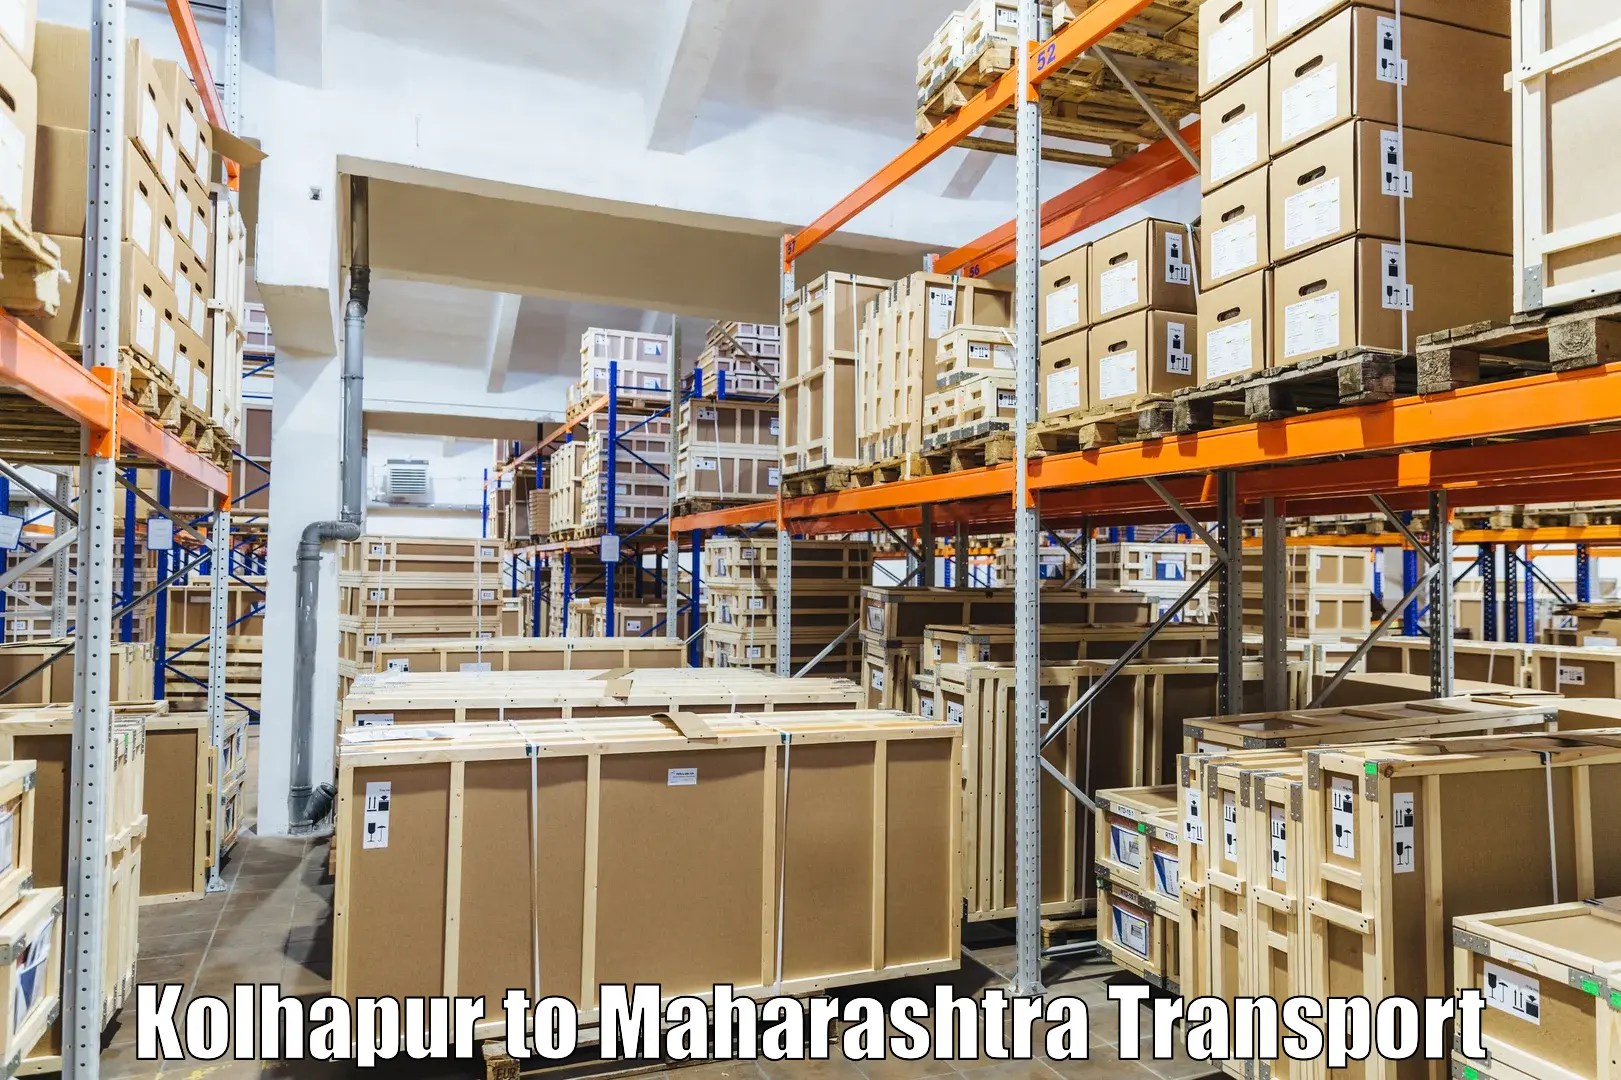 Daily parcel service transport Kolhapur to Dahanu